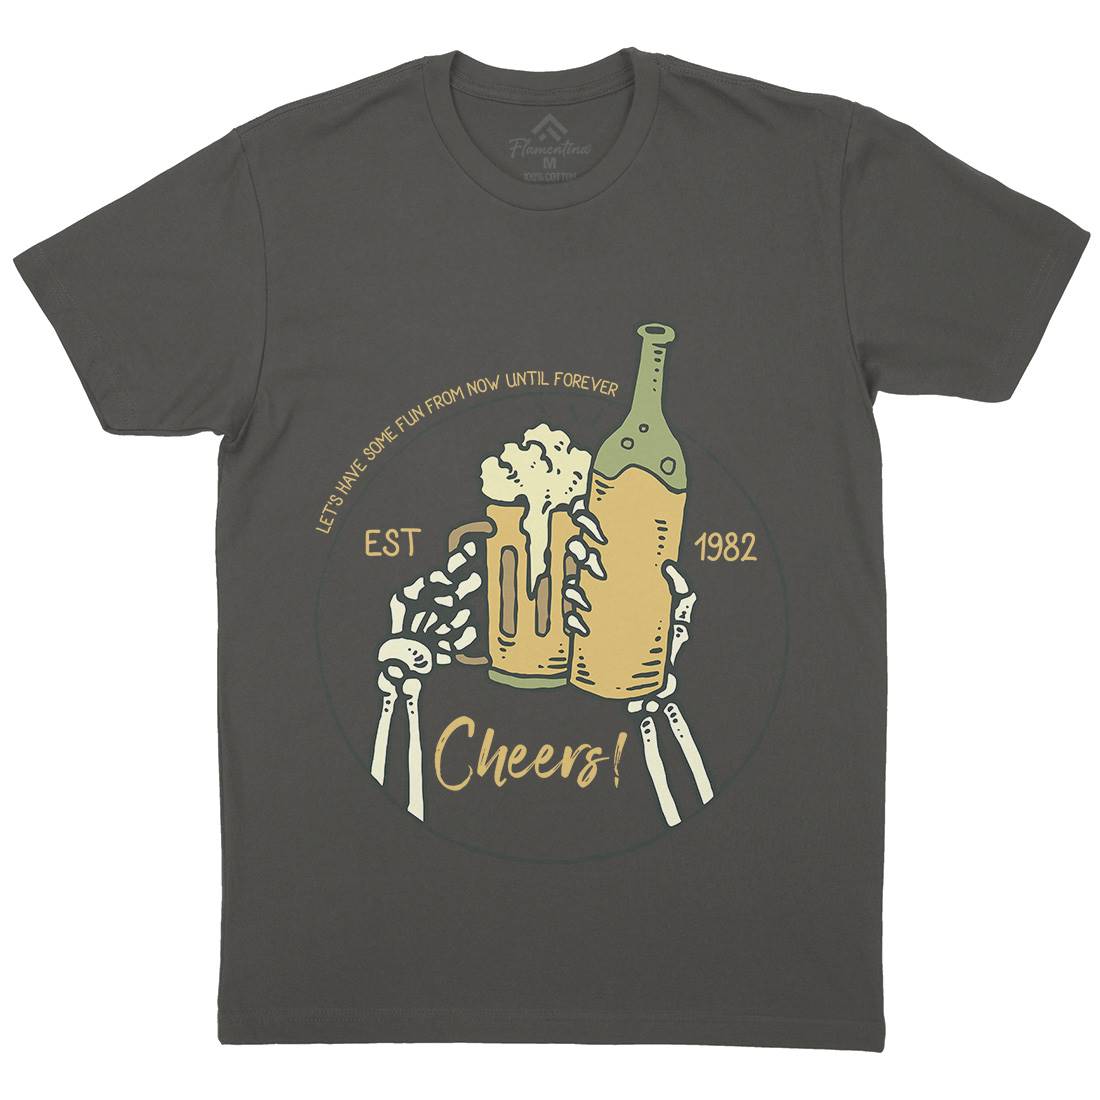 Cheers Mens Organic Crew Neck T-Shirt Drinks C715